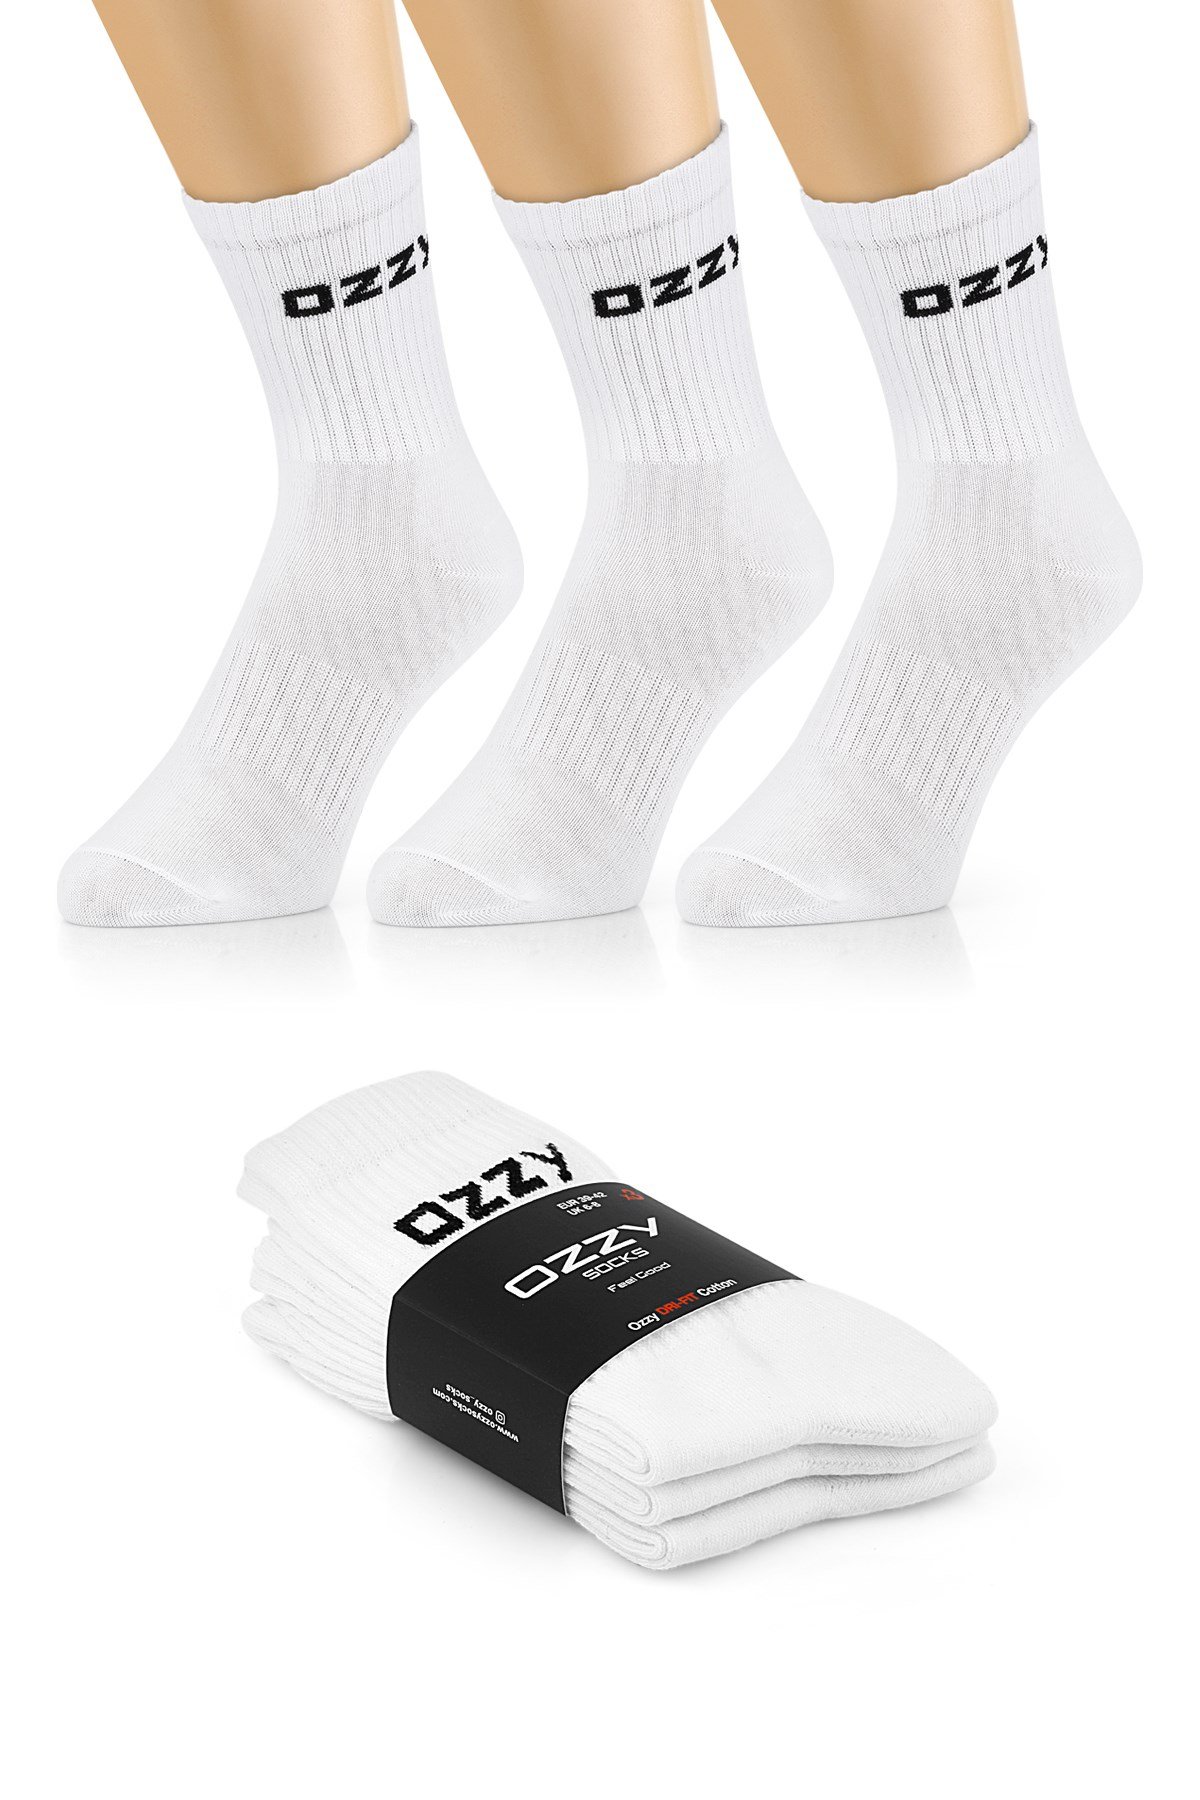 Ozzy Socks 3 Çift Uzun Konçlu Tenis Spor Çorabı Siyah Paket